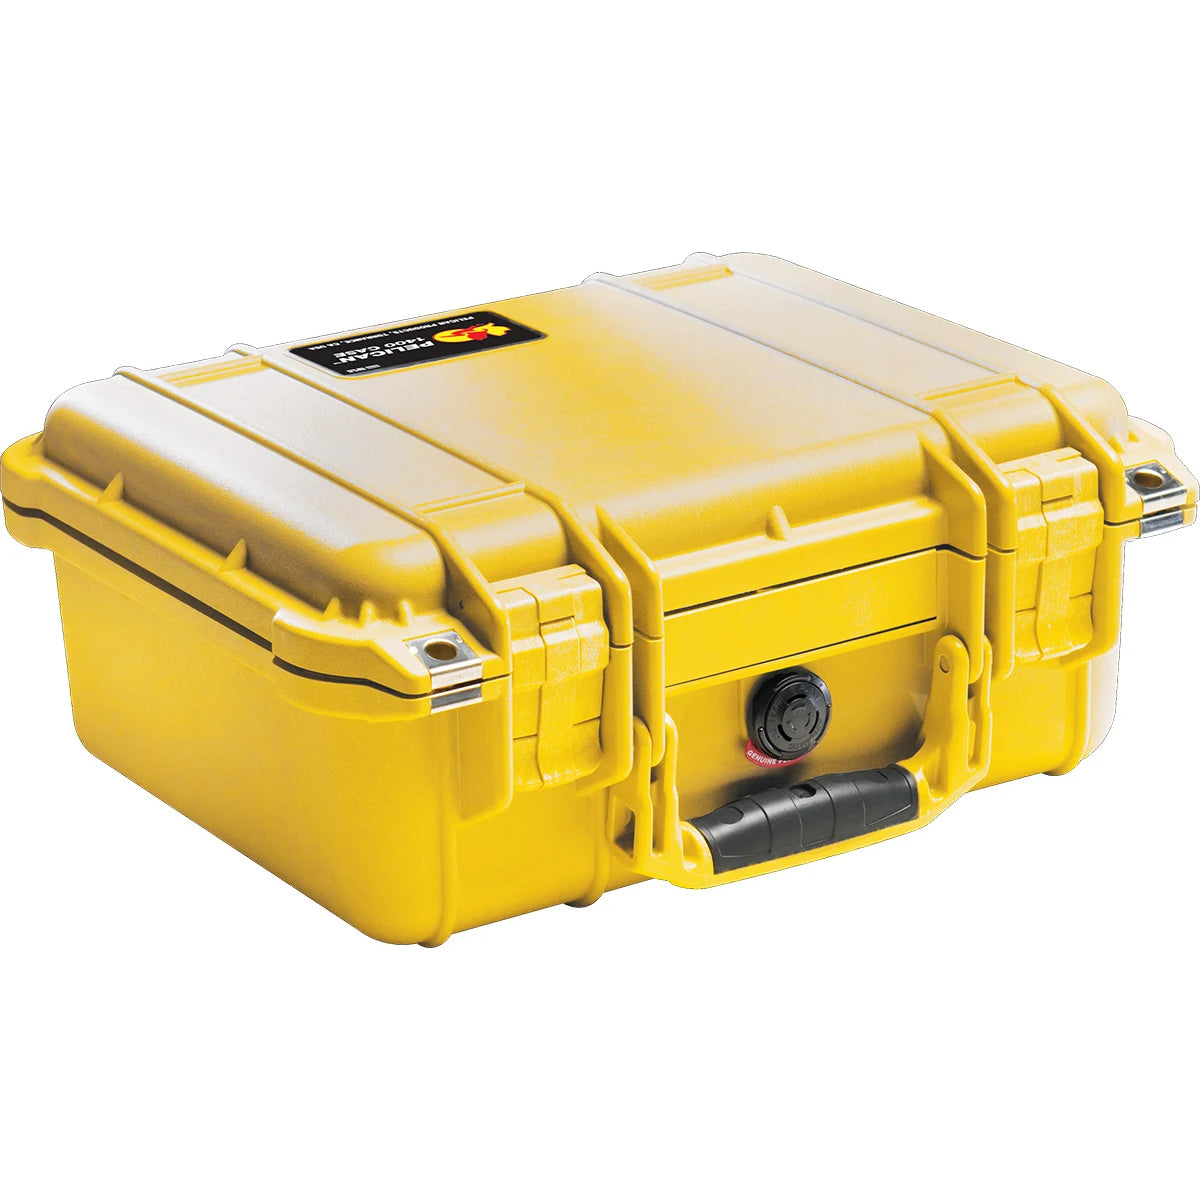 Pelican | 1400 Protector Waterproof, Crushproof & Dustproof Case